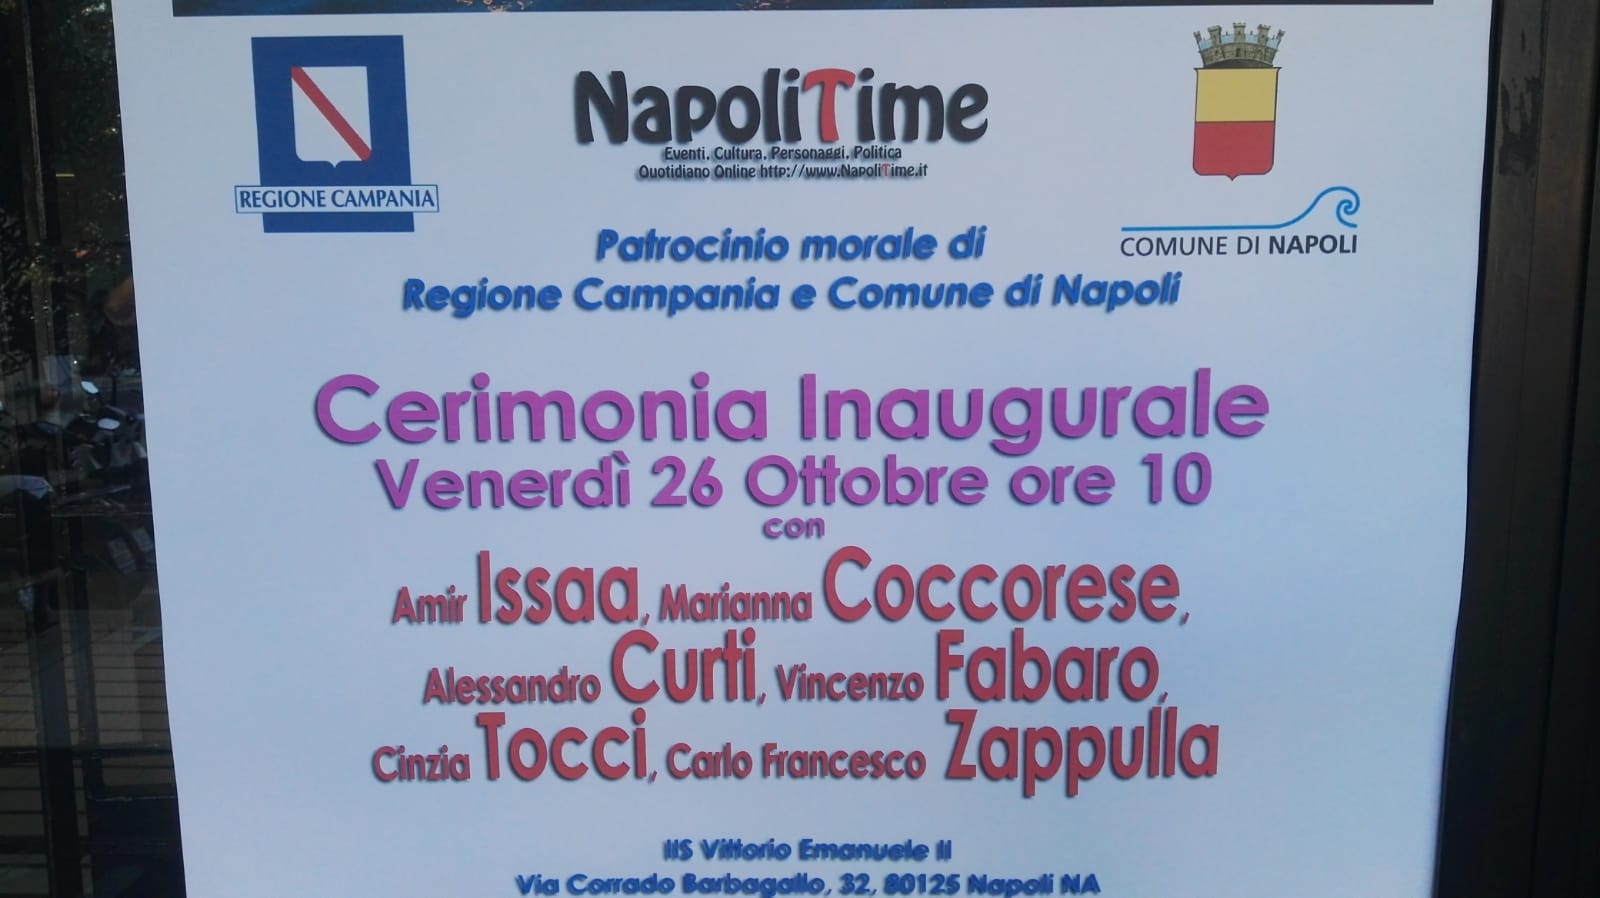 Napolitime